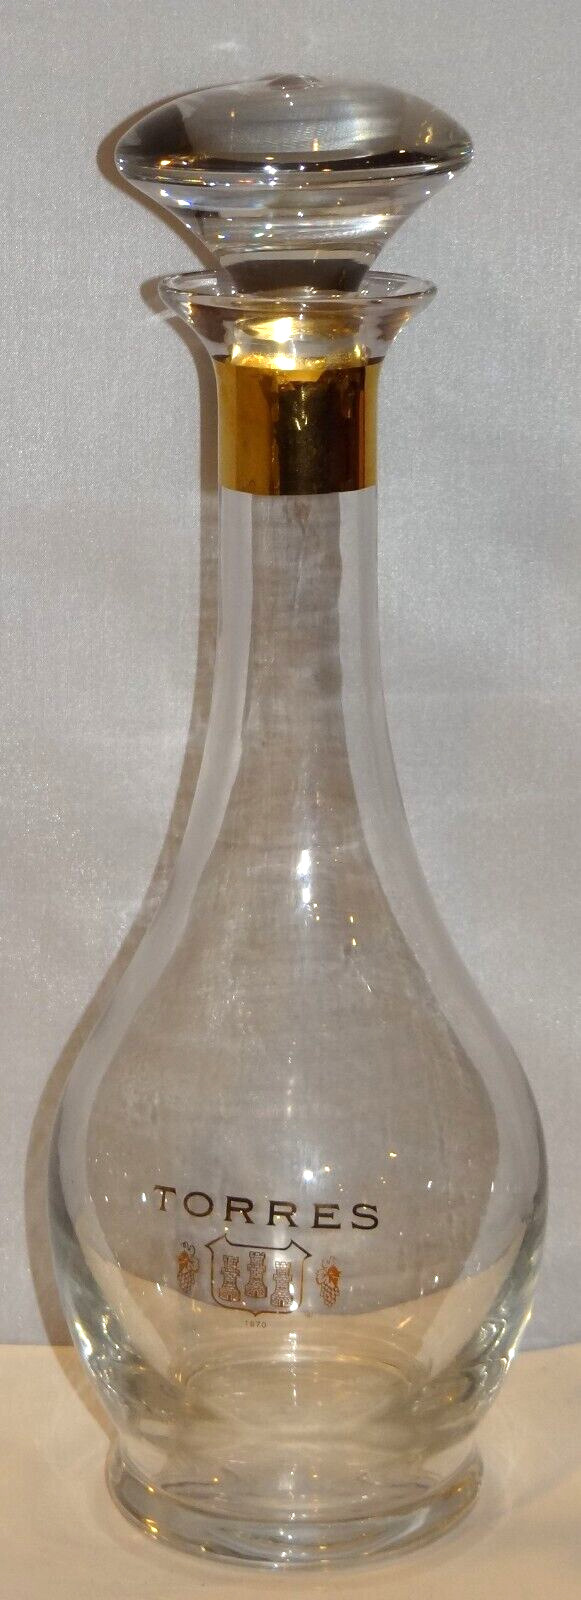 Vintage Torres 1870 Brandy Wine Crystal Decanter Carafe Bottle w Stopper Spanish